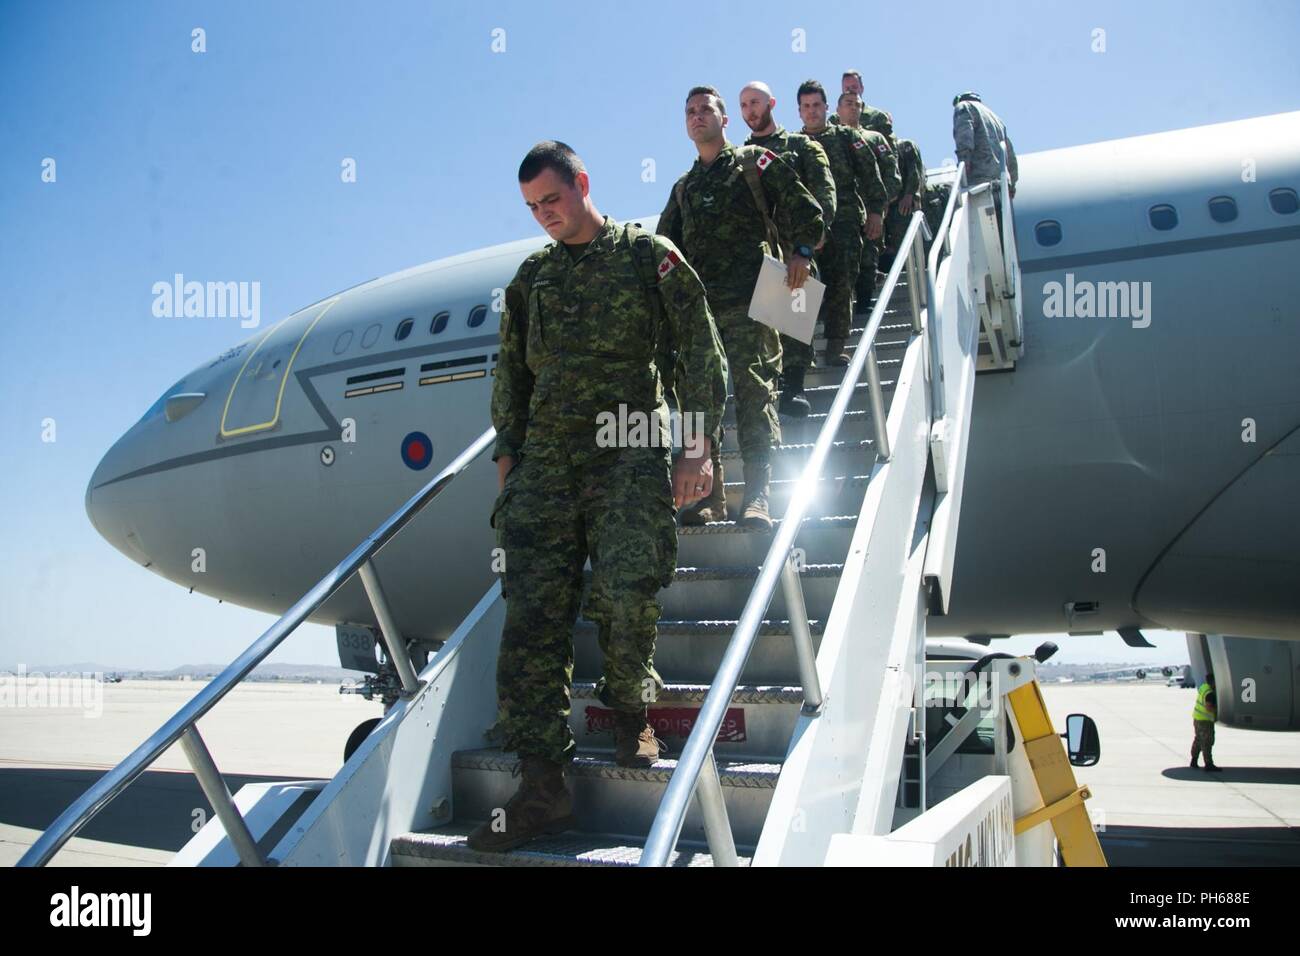 AIR RESERVE BASE, Calif (25. Juni 2018) Der kanadische Soldaten, die in den 2 e Bataillon, Royal 22e Régiment, Kanadische Streitkräfte, Ausfahrt a Royal Air Force Airbus (KC2 Voyager) in den Rand des Pazifik (Rimpac) Übung im März Air Reserve Base, Kalifornien, 25. Juni 2018 zu beteiligen. 25 Nationen, mehr als 45 Schiffe und u-Boote, etwa 200 Flugzeugen und 25.000 Angestellte beteiligen sich an Rimpac vom 27. Juni bis 2. August in und um die hawaiischen Inseln und Südkalifornien. Marines Training mit der US-Navy und Partner Nationen aus der ganzen Welt erhöht die Schlagkraft. RIMPAC bietet Stockfoto